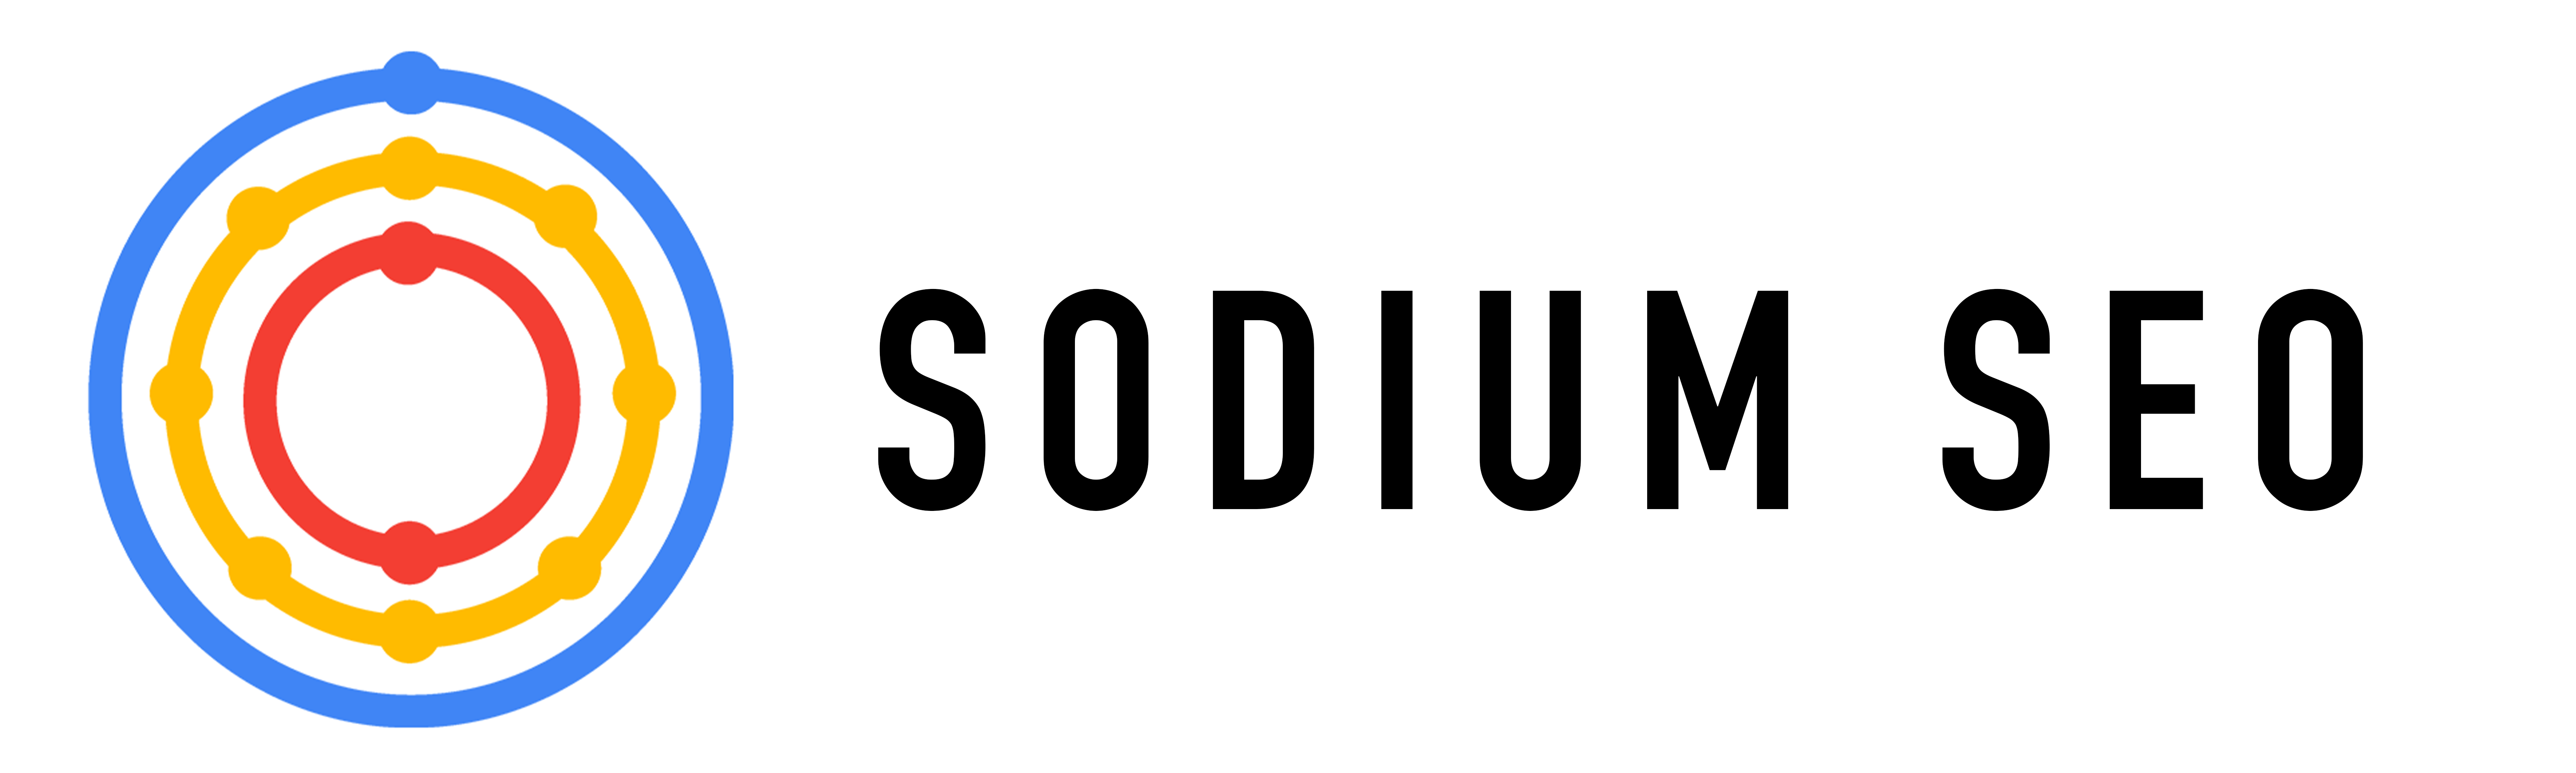 Sodium SEO Consultant logo London Essex